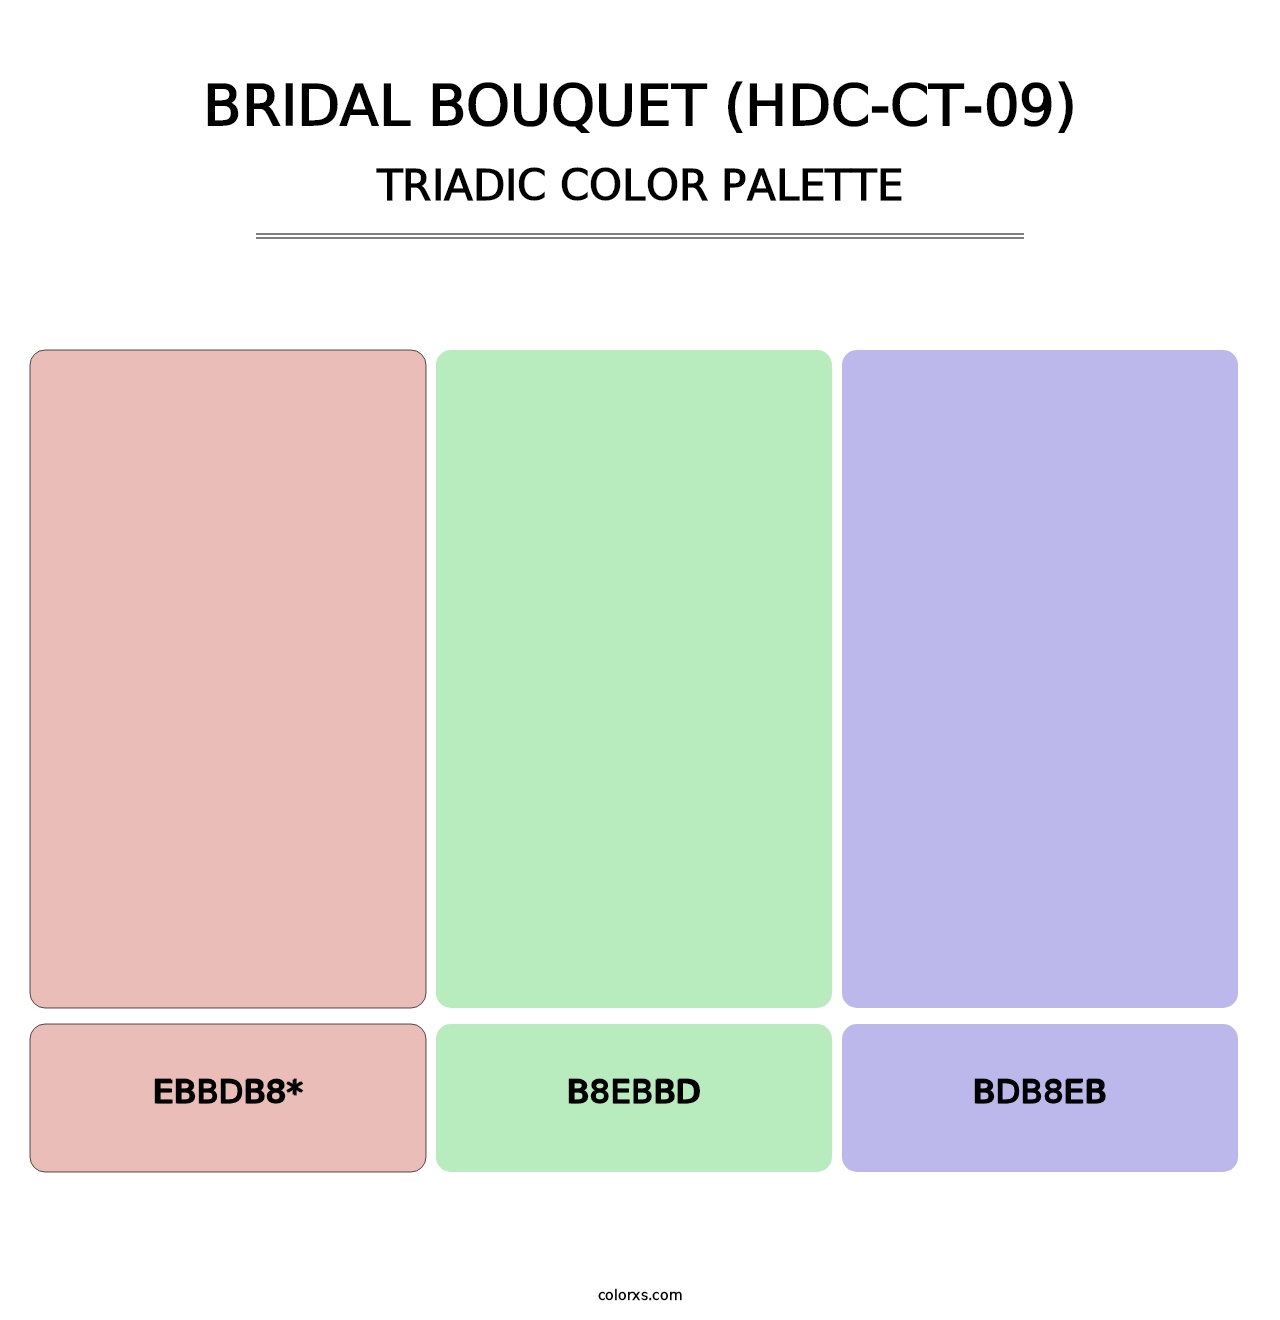 Bridal Bouquet (HDC-CT-09) - Triadic Color Palette